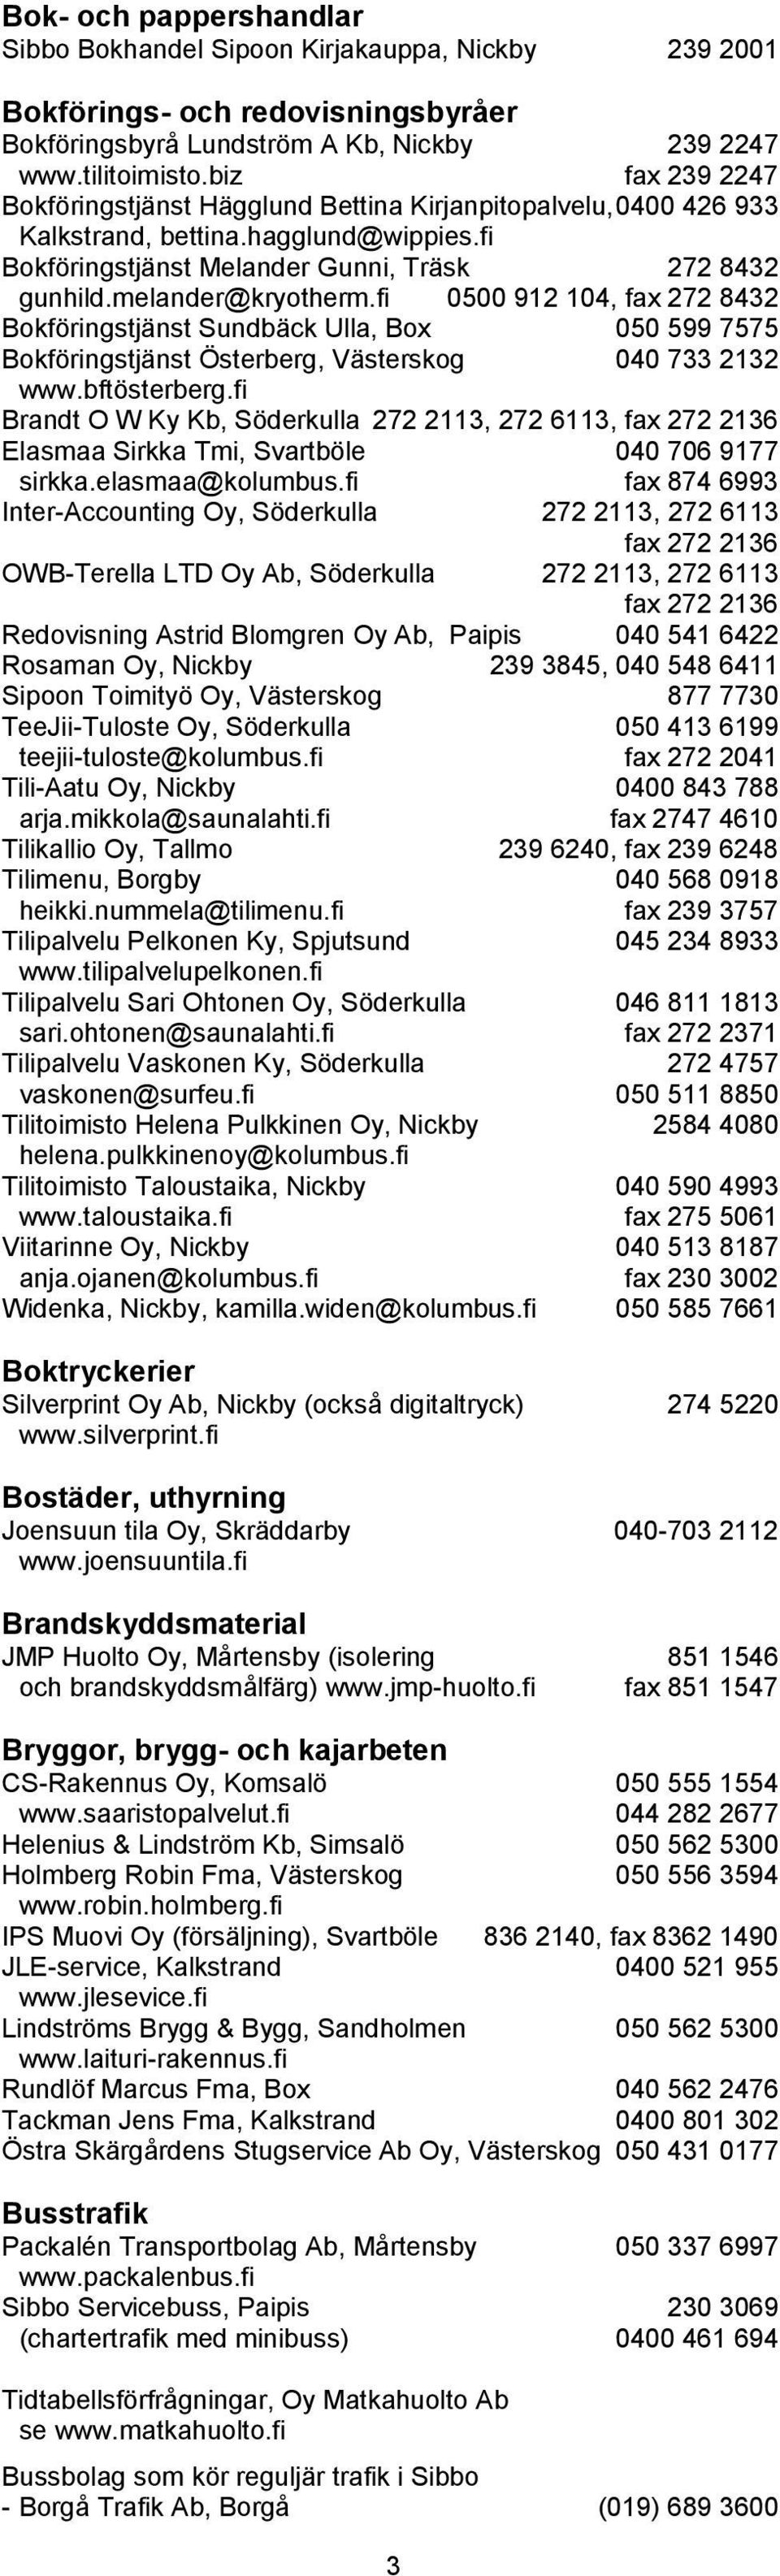 fi 0500 912 104, fax 272 8432 Bokföringstjänst Sundbäck Ulla, Box 050 599 7575 Bokföringstjänst Österberg, Västerskog 040 733 2132 www.bftösterberg.